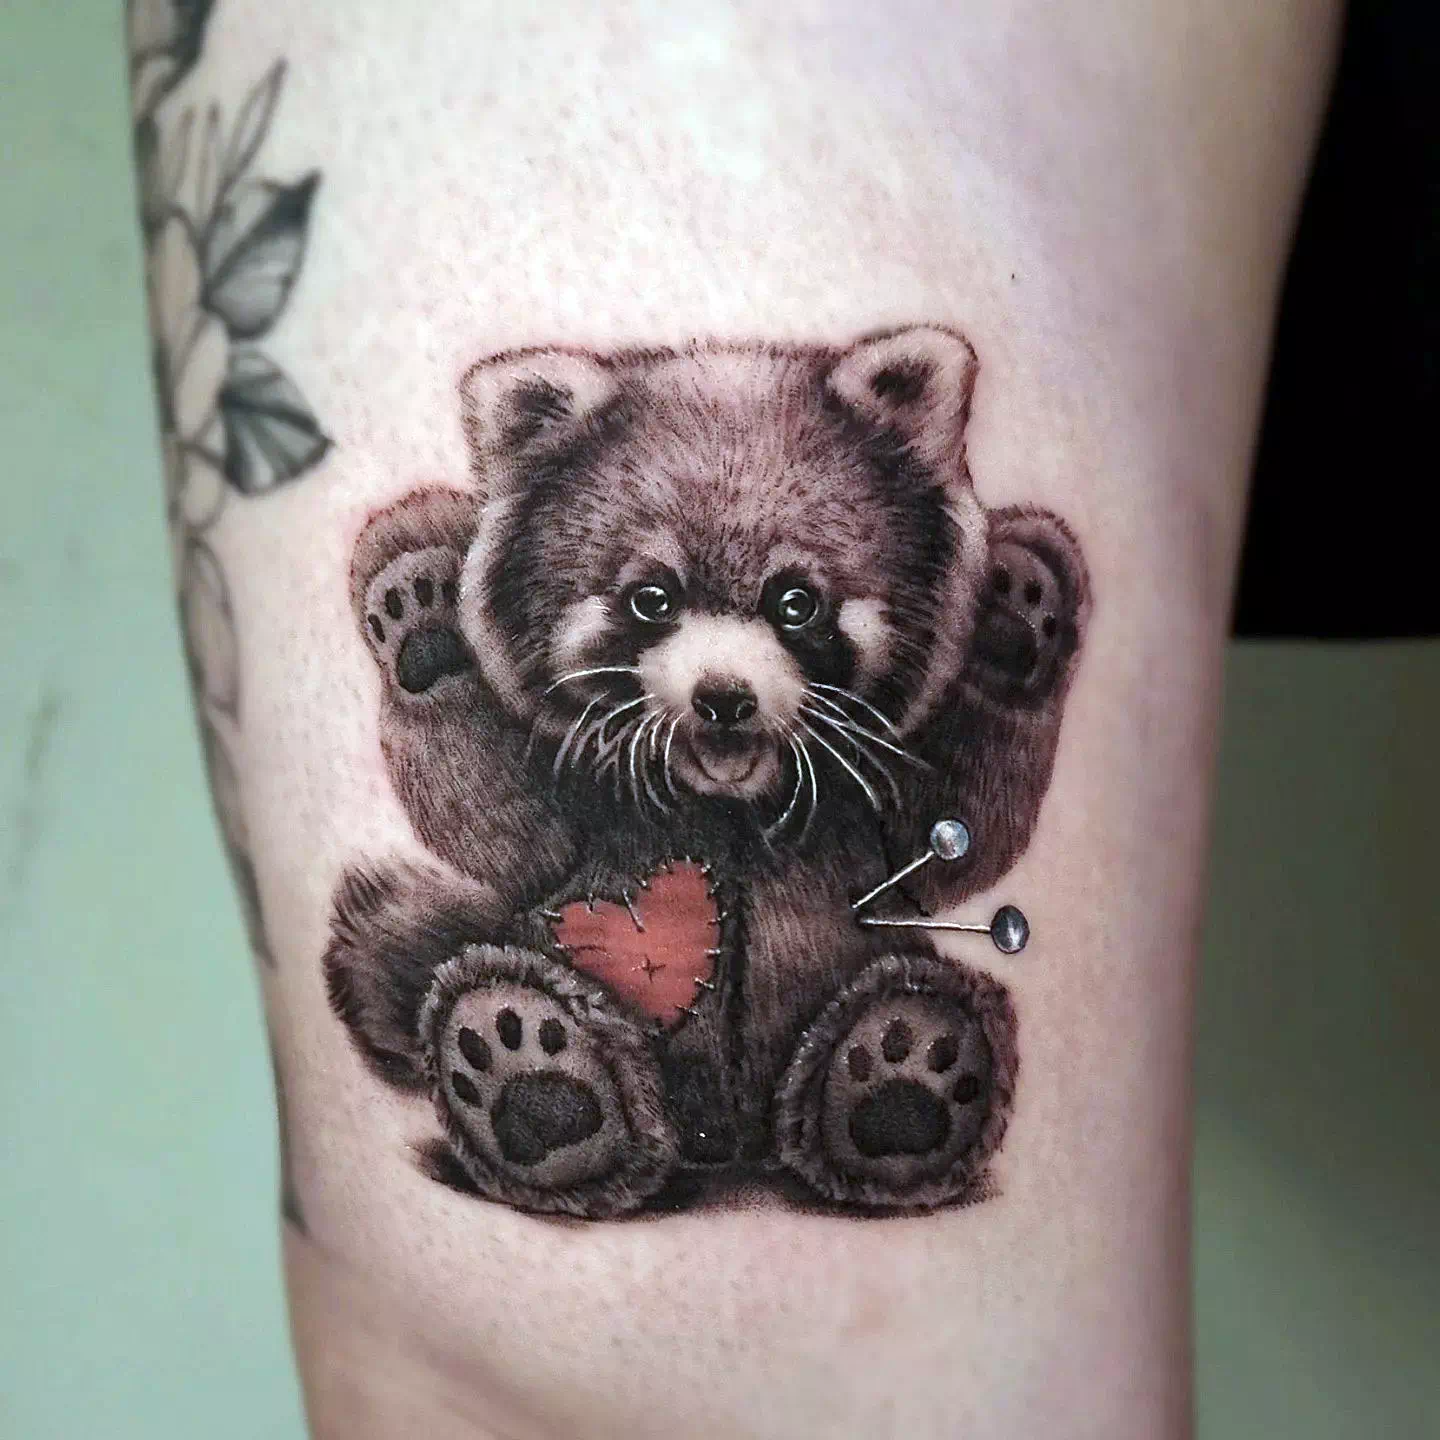 Panda tattoo ideas 11